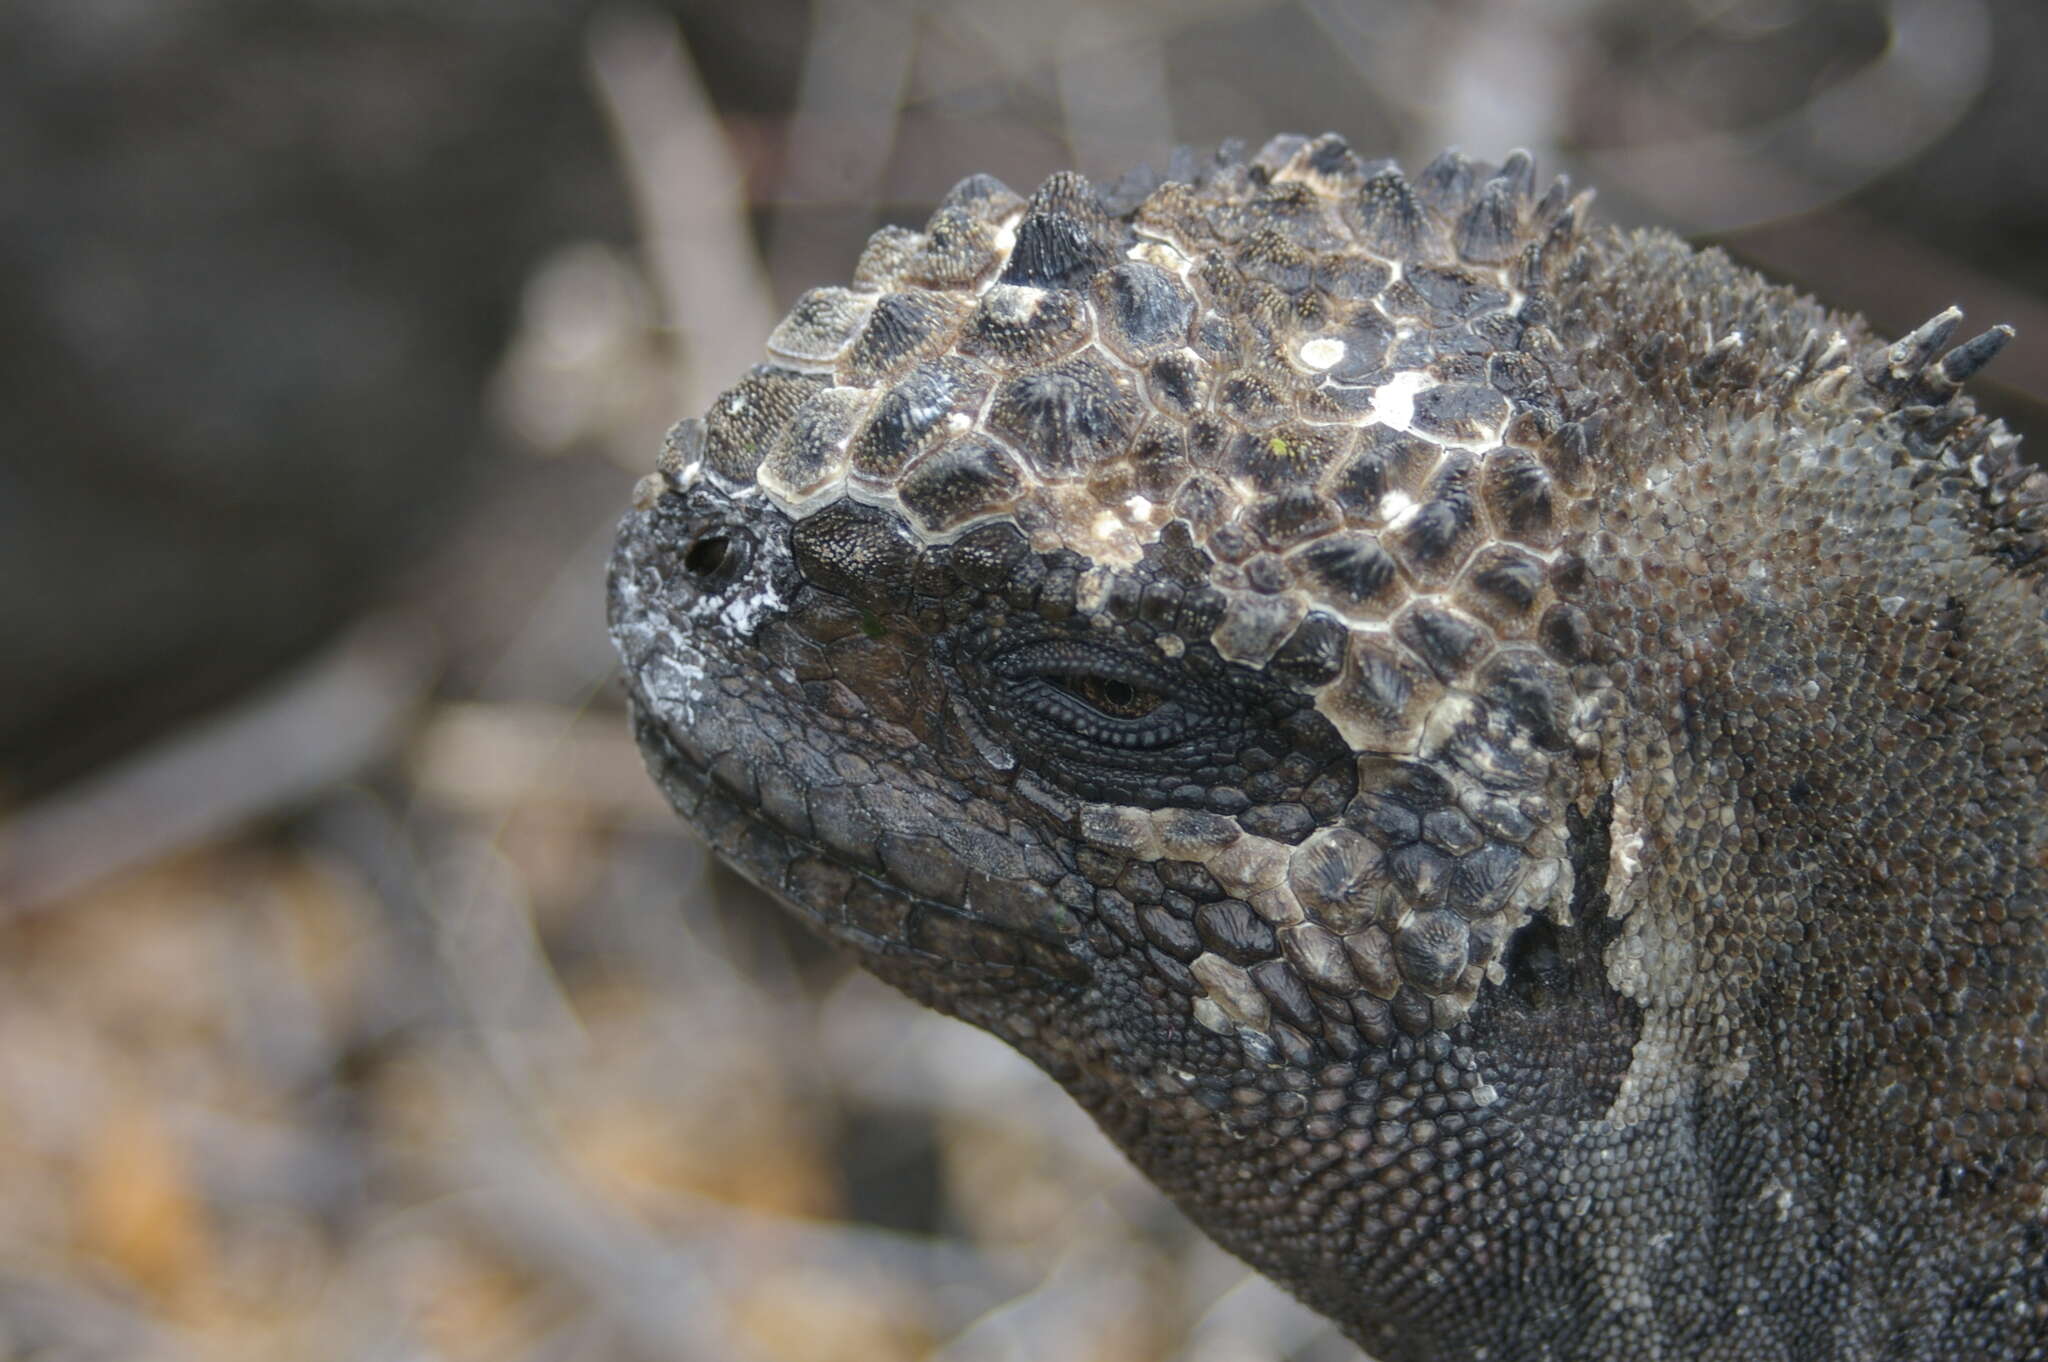 Image of marine iguana